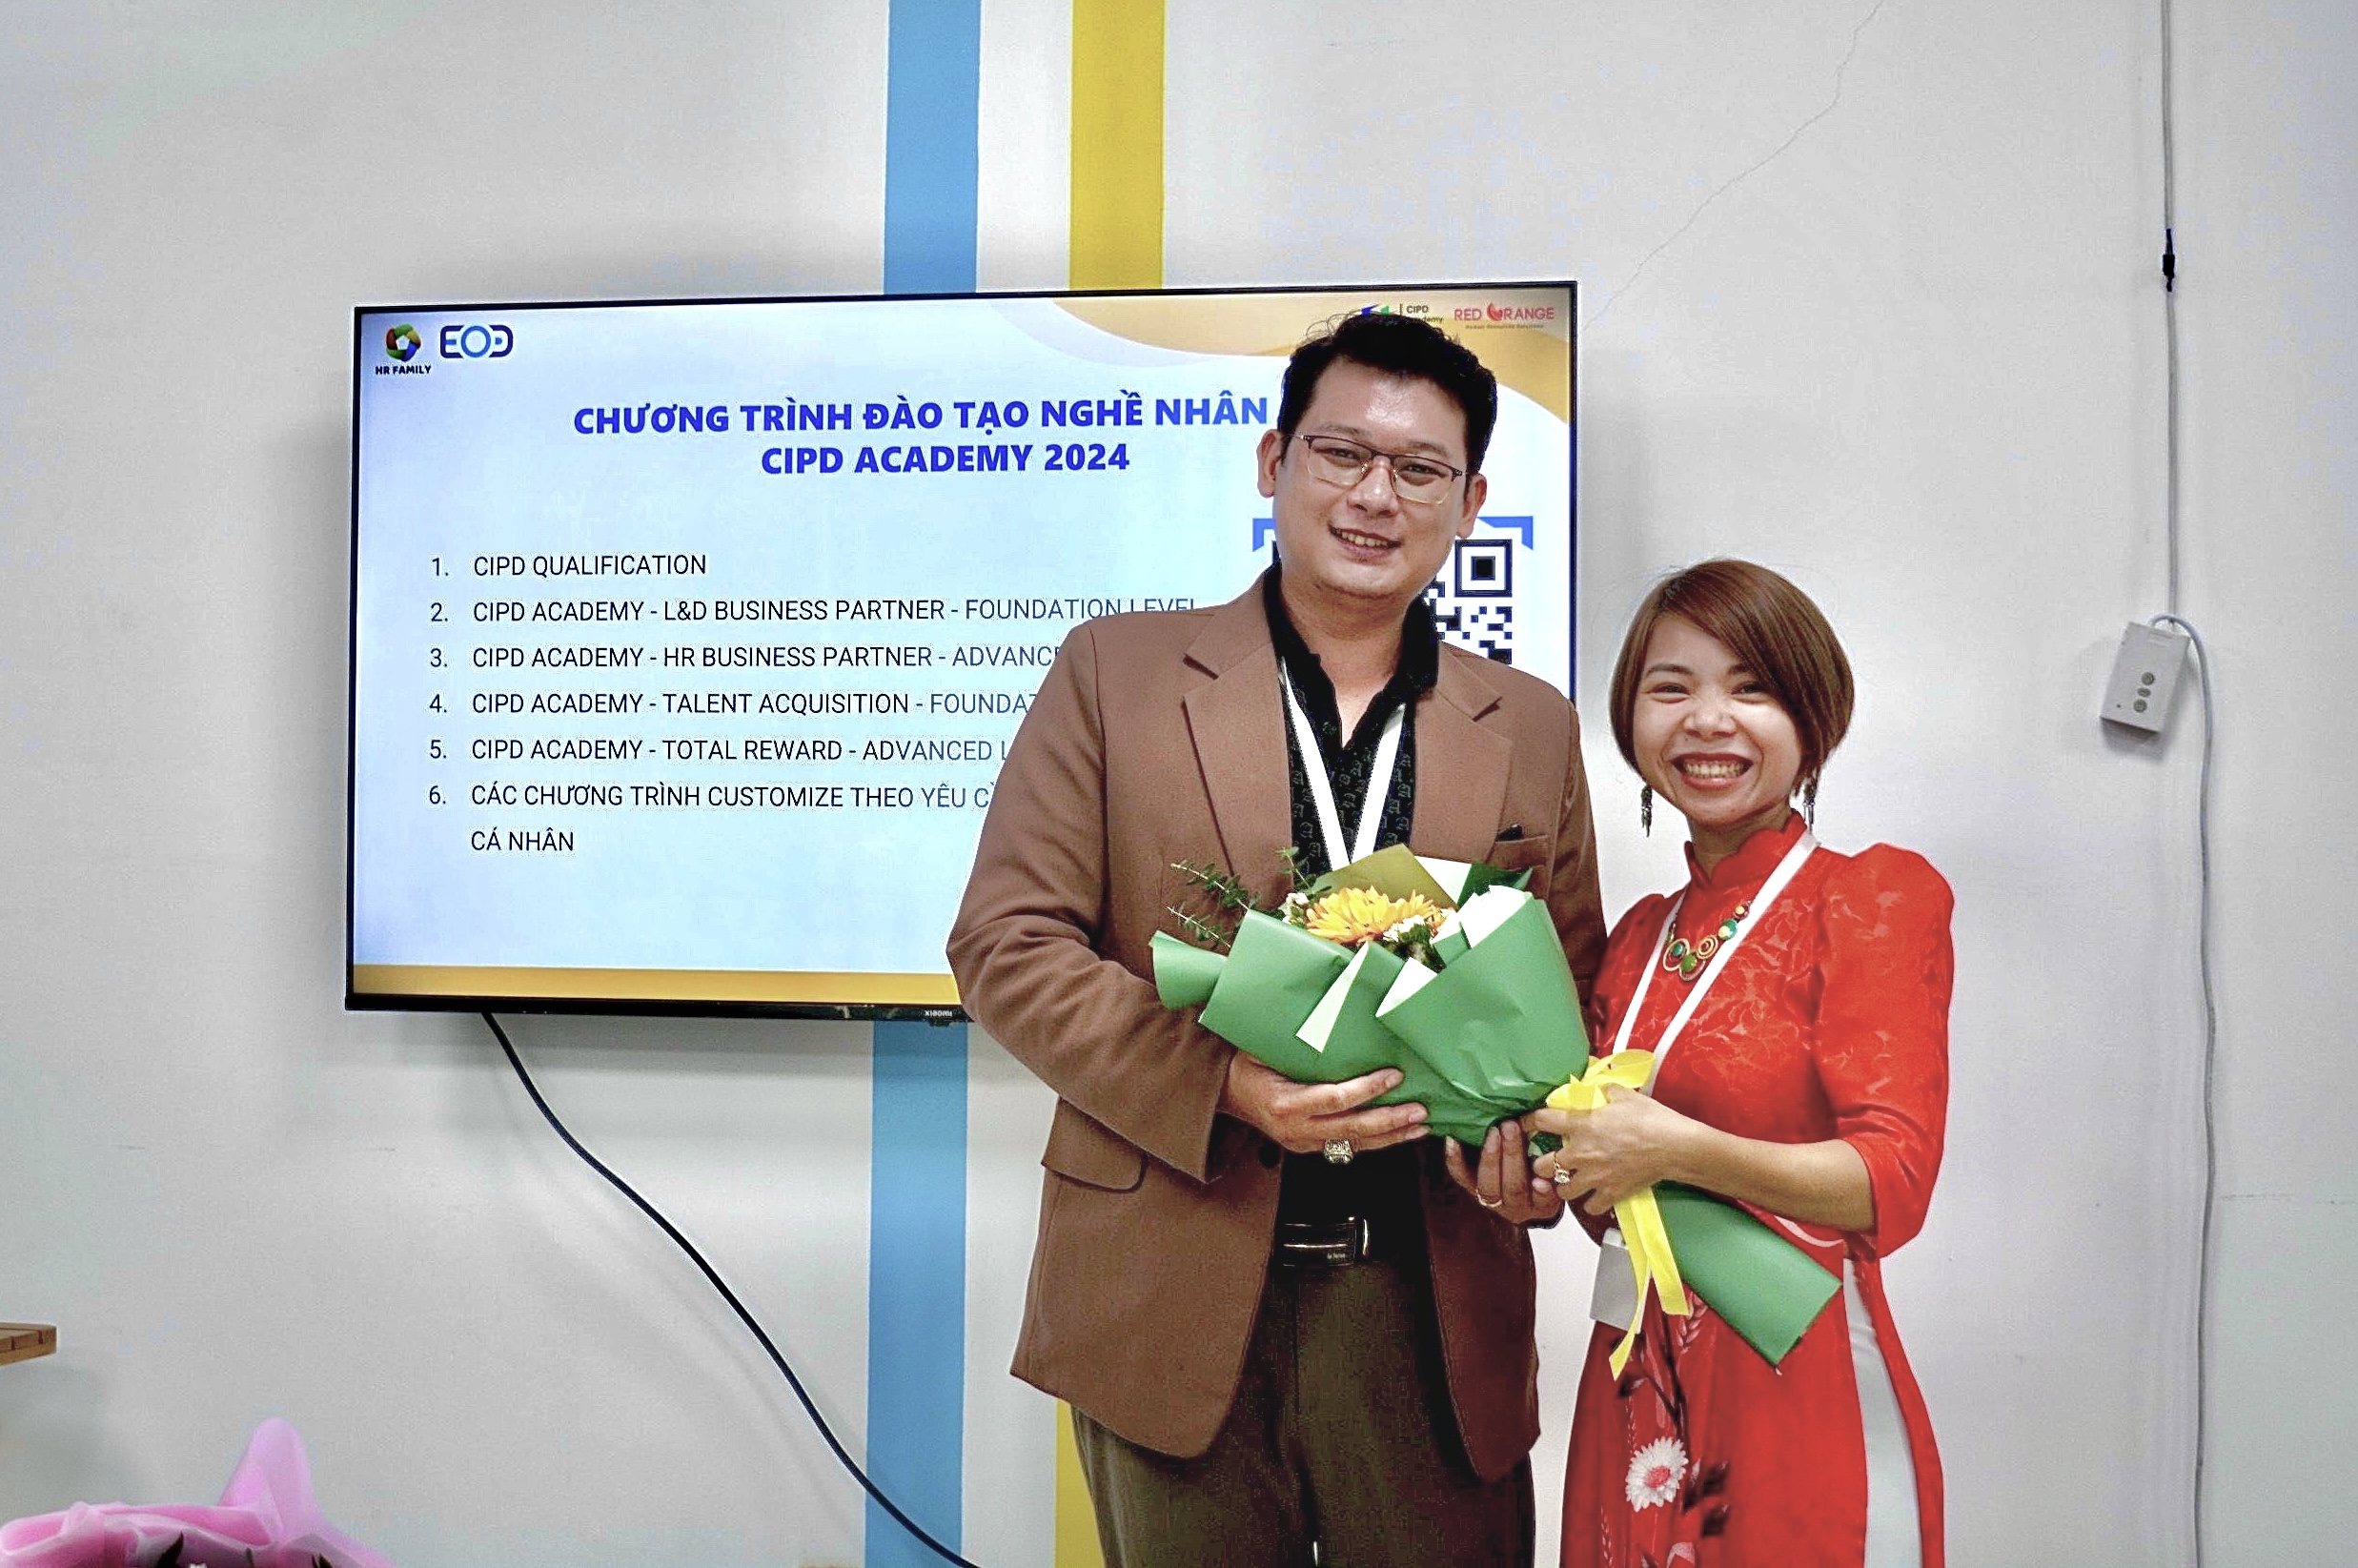 Ảnh: Đại diện CLS anh Quý - Chief Commercial Officer tại Cloud Learning System (CLS), cùng Chị Sa Lê Serena. 